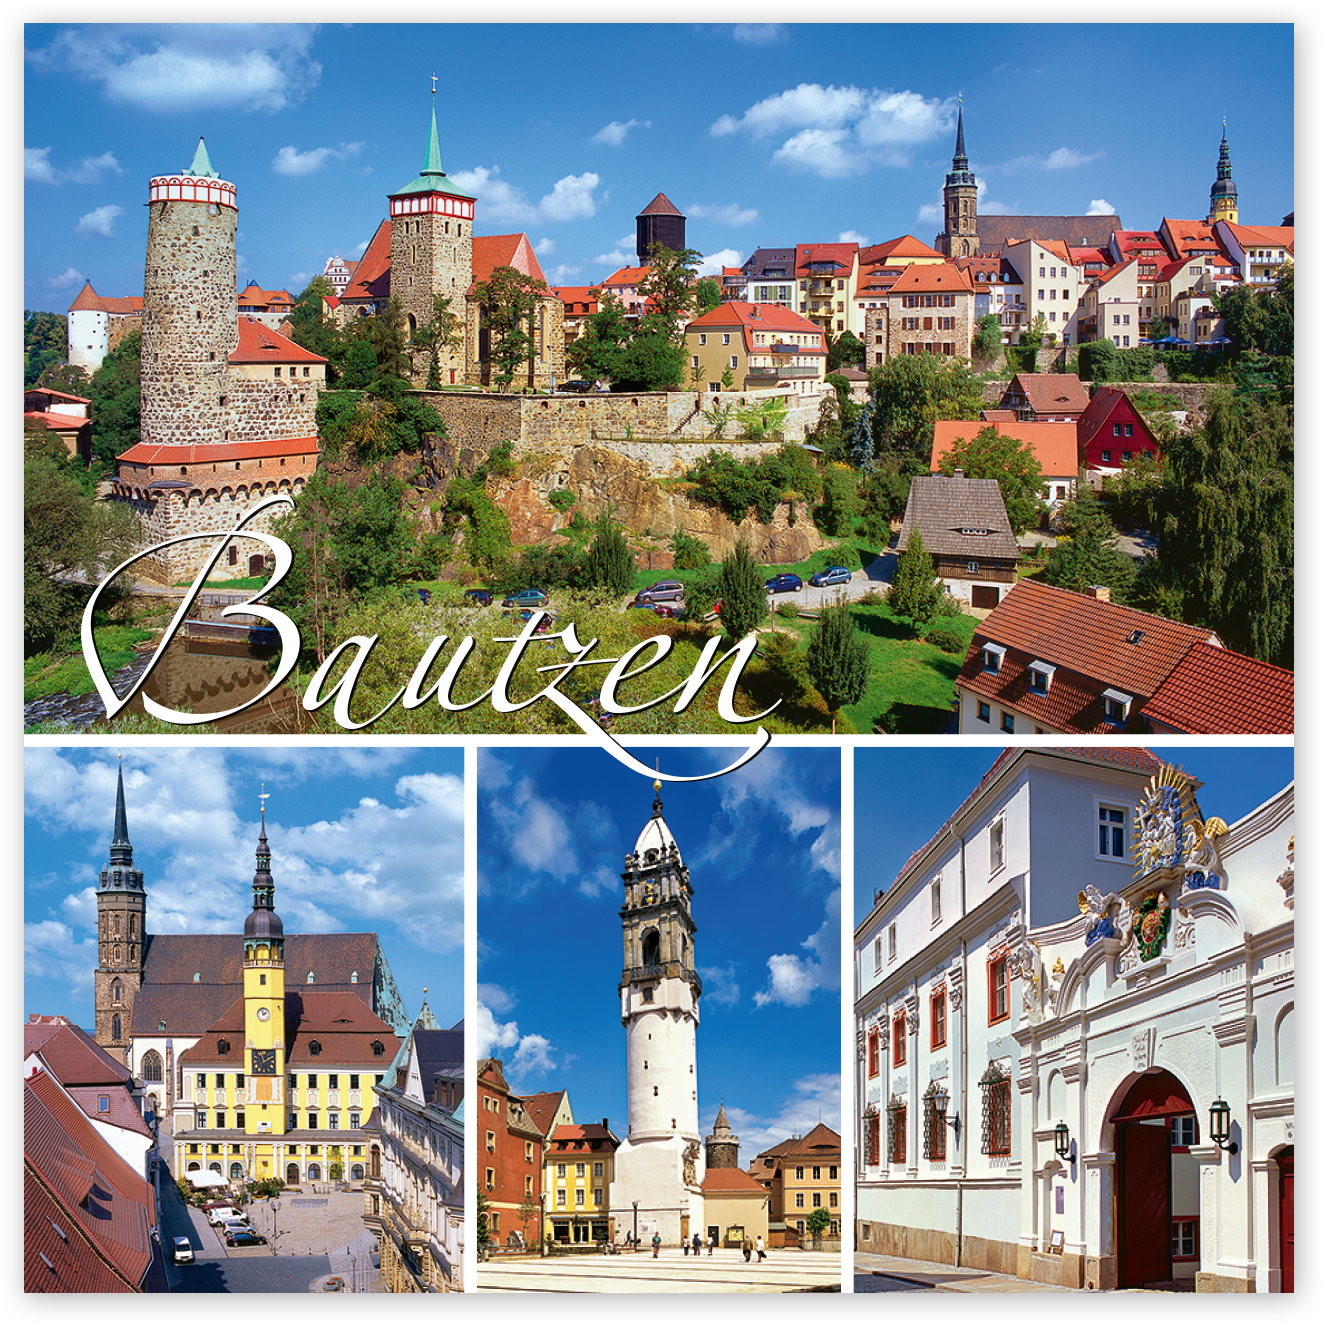 Magnet Bautzen – Bautzens schönste Ansichten (Collage II)